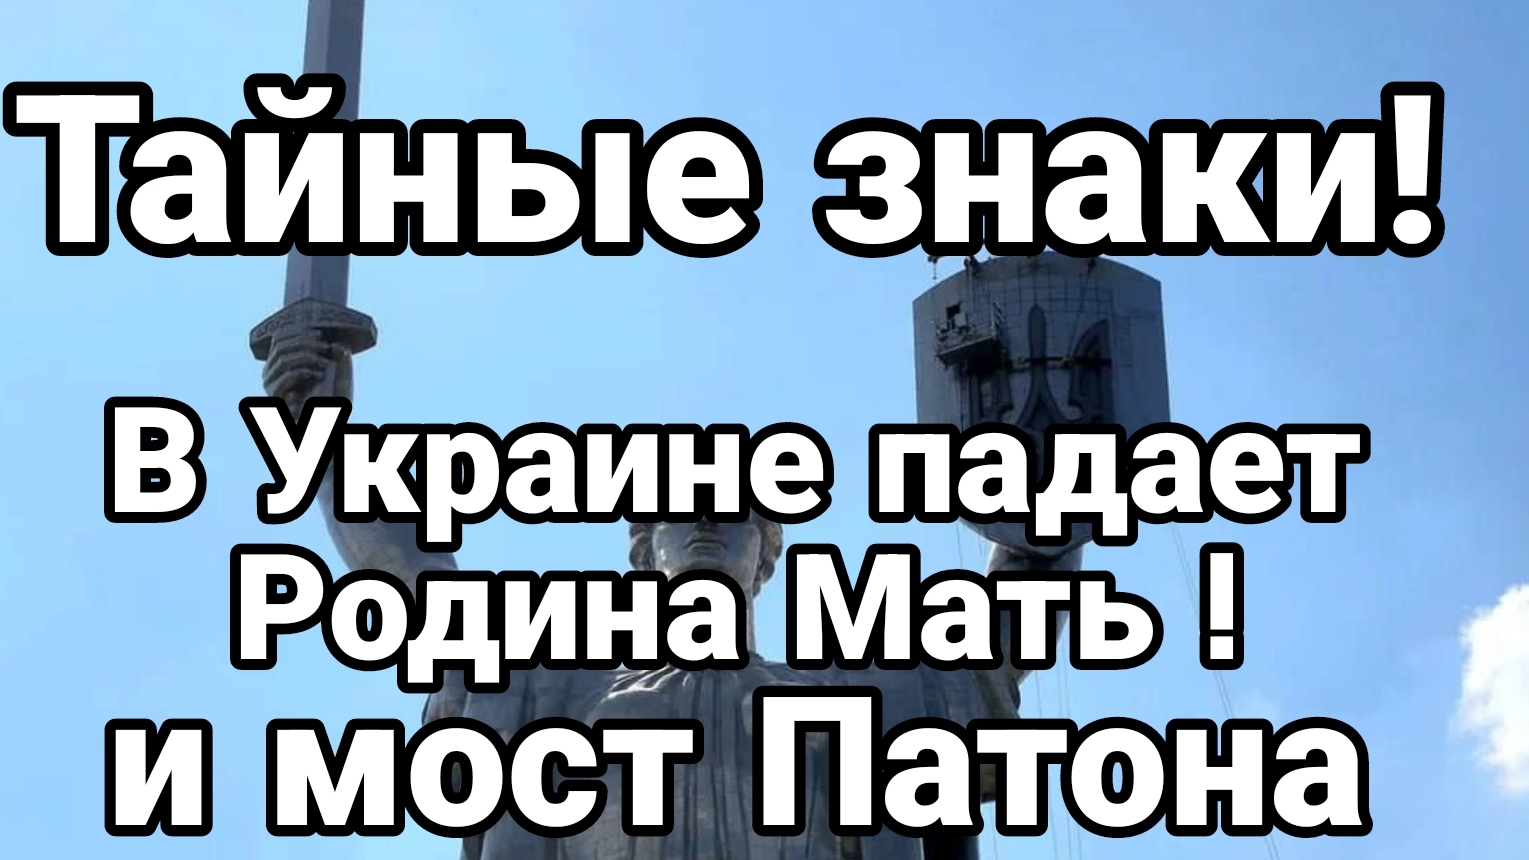 В Киеве ПАДАЕТ РОДИНА-МАТЬ! и мост Патона